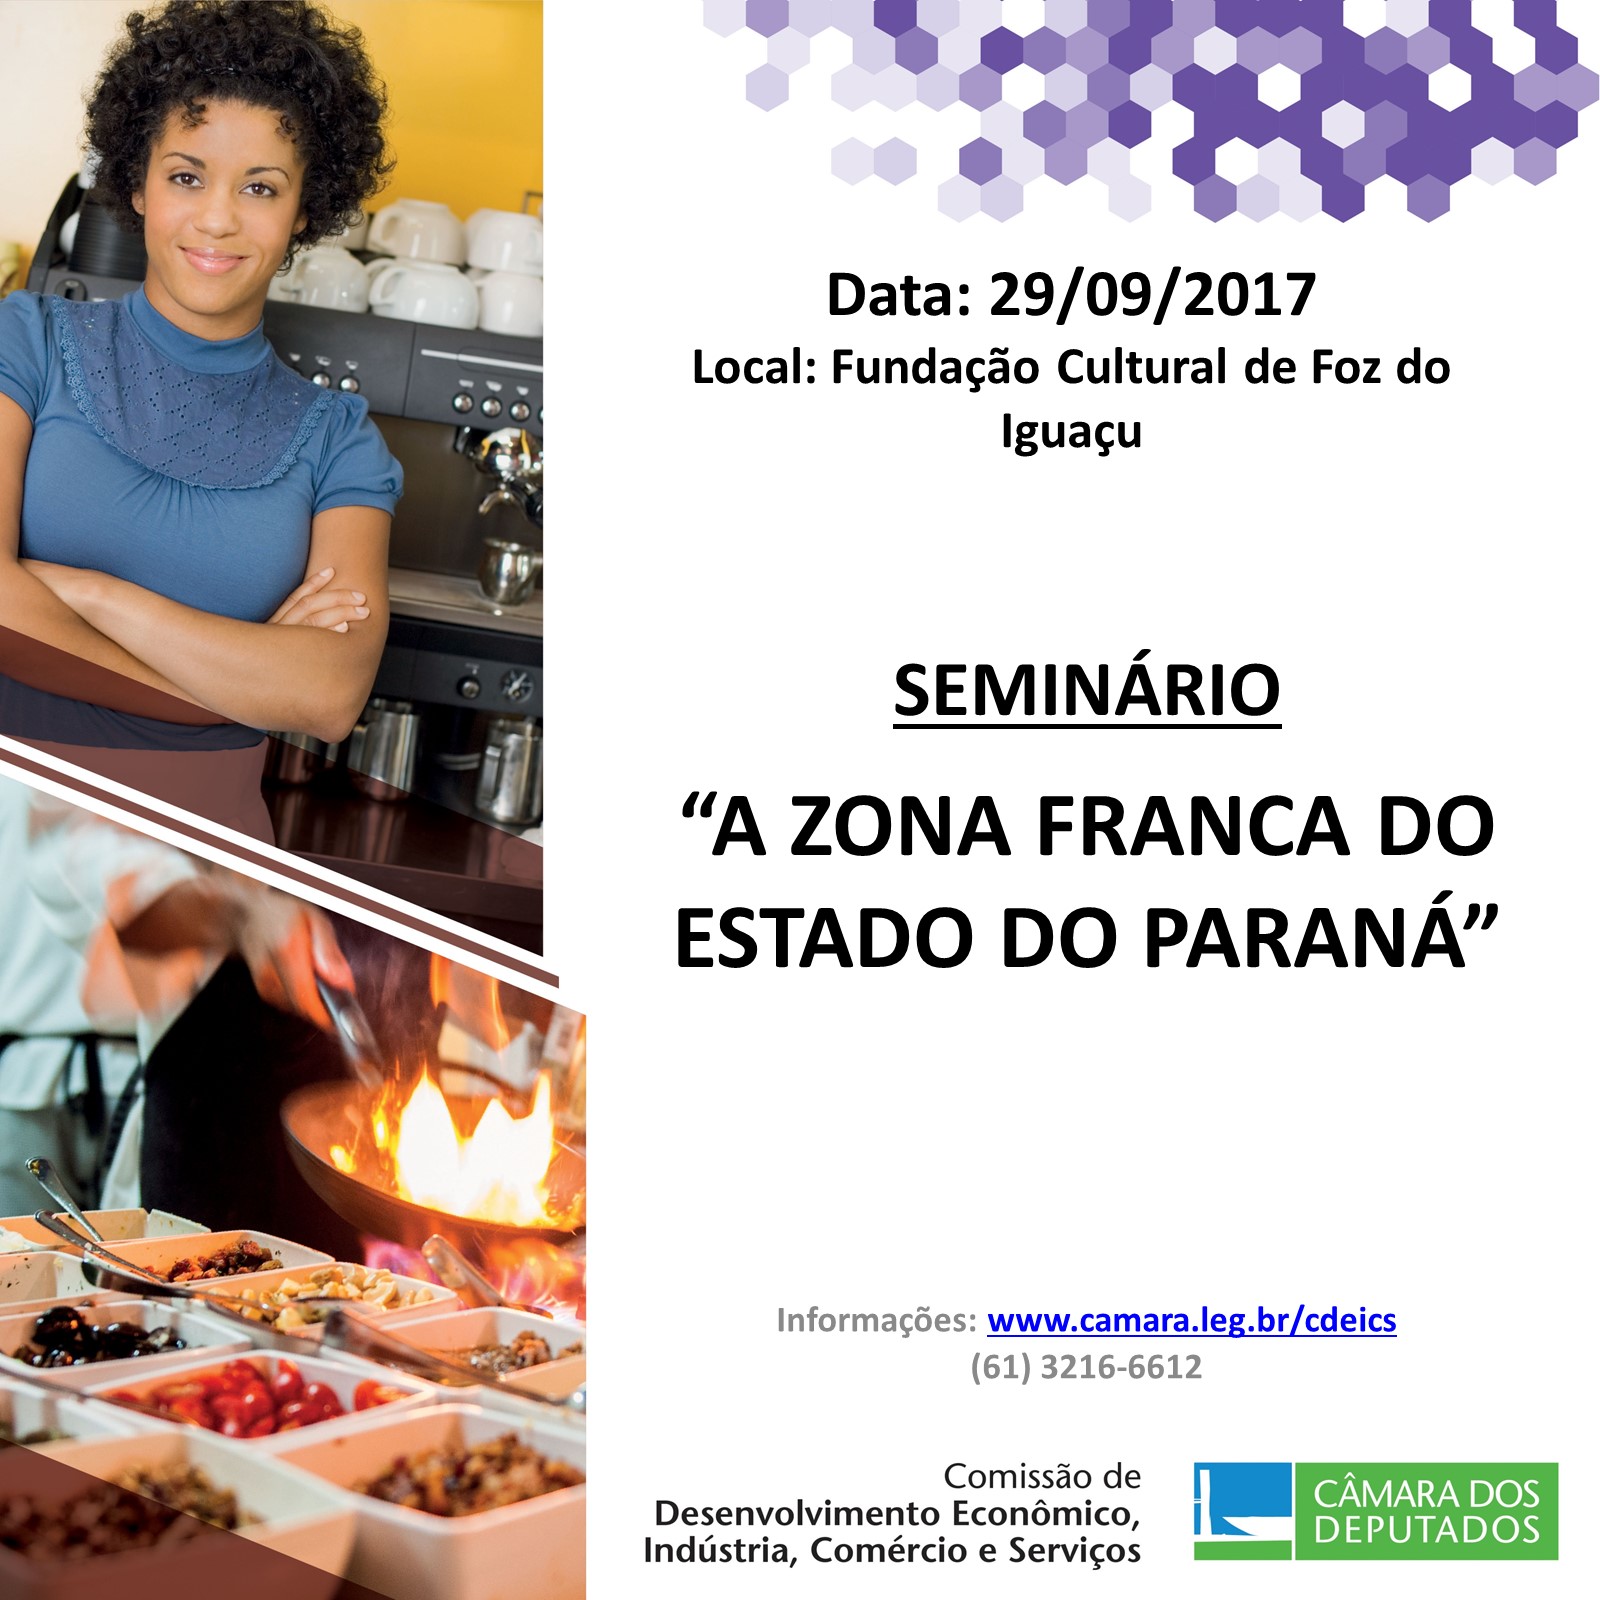  A Zona Franca do Estado do Paraná será matéria de seminário da Comissão